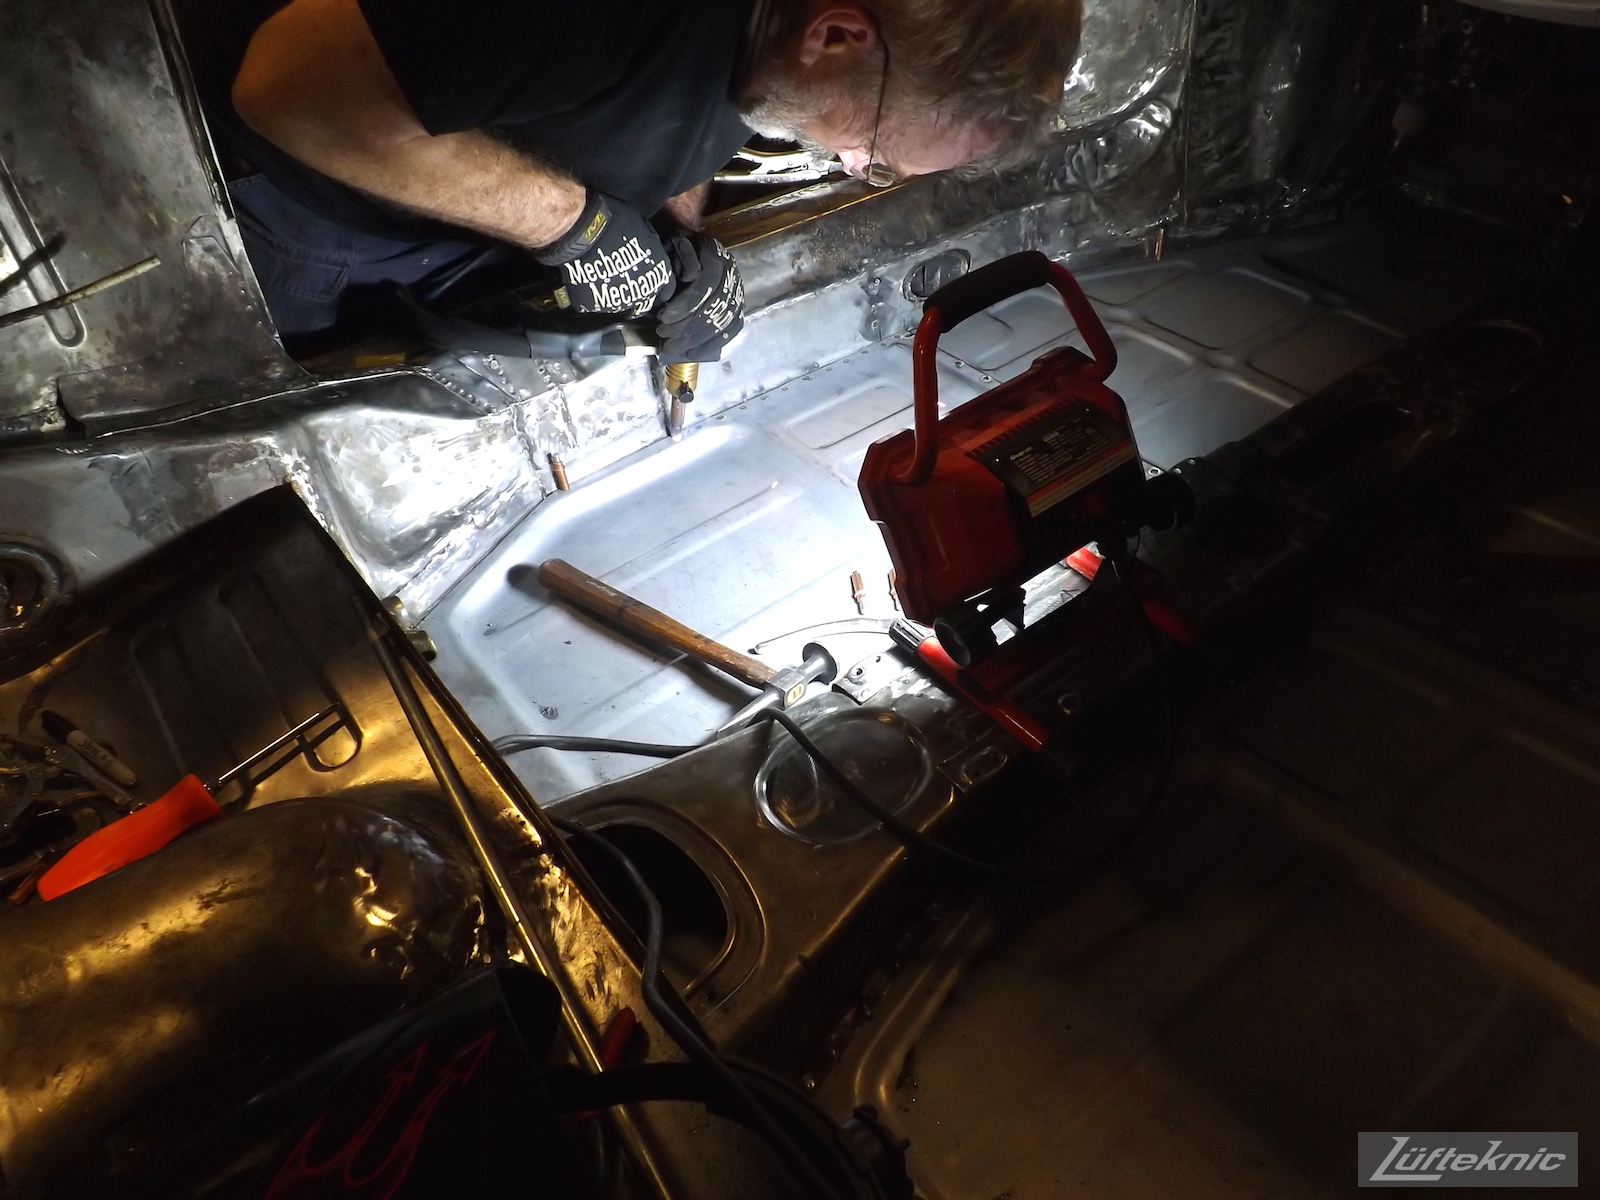 Spot welding the floor of a White 1964 Porsche 356SC being restored.